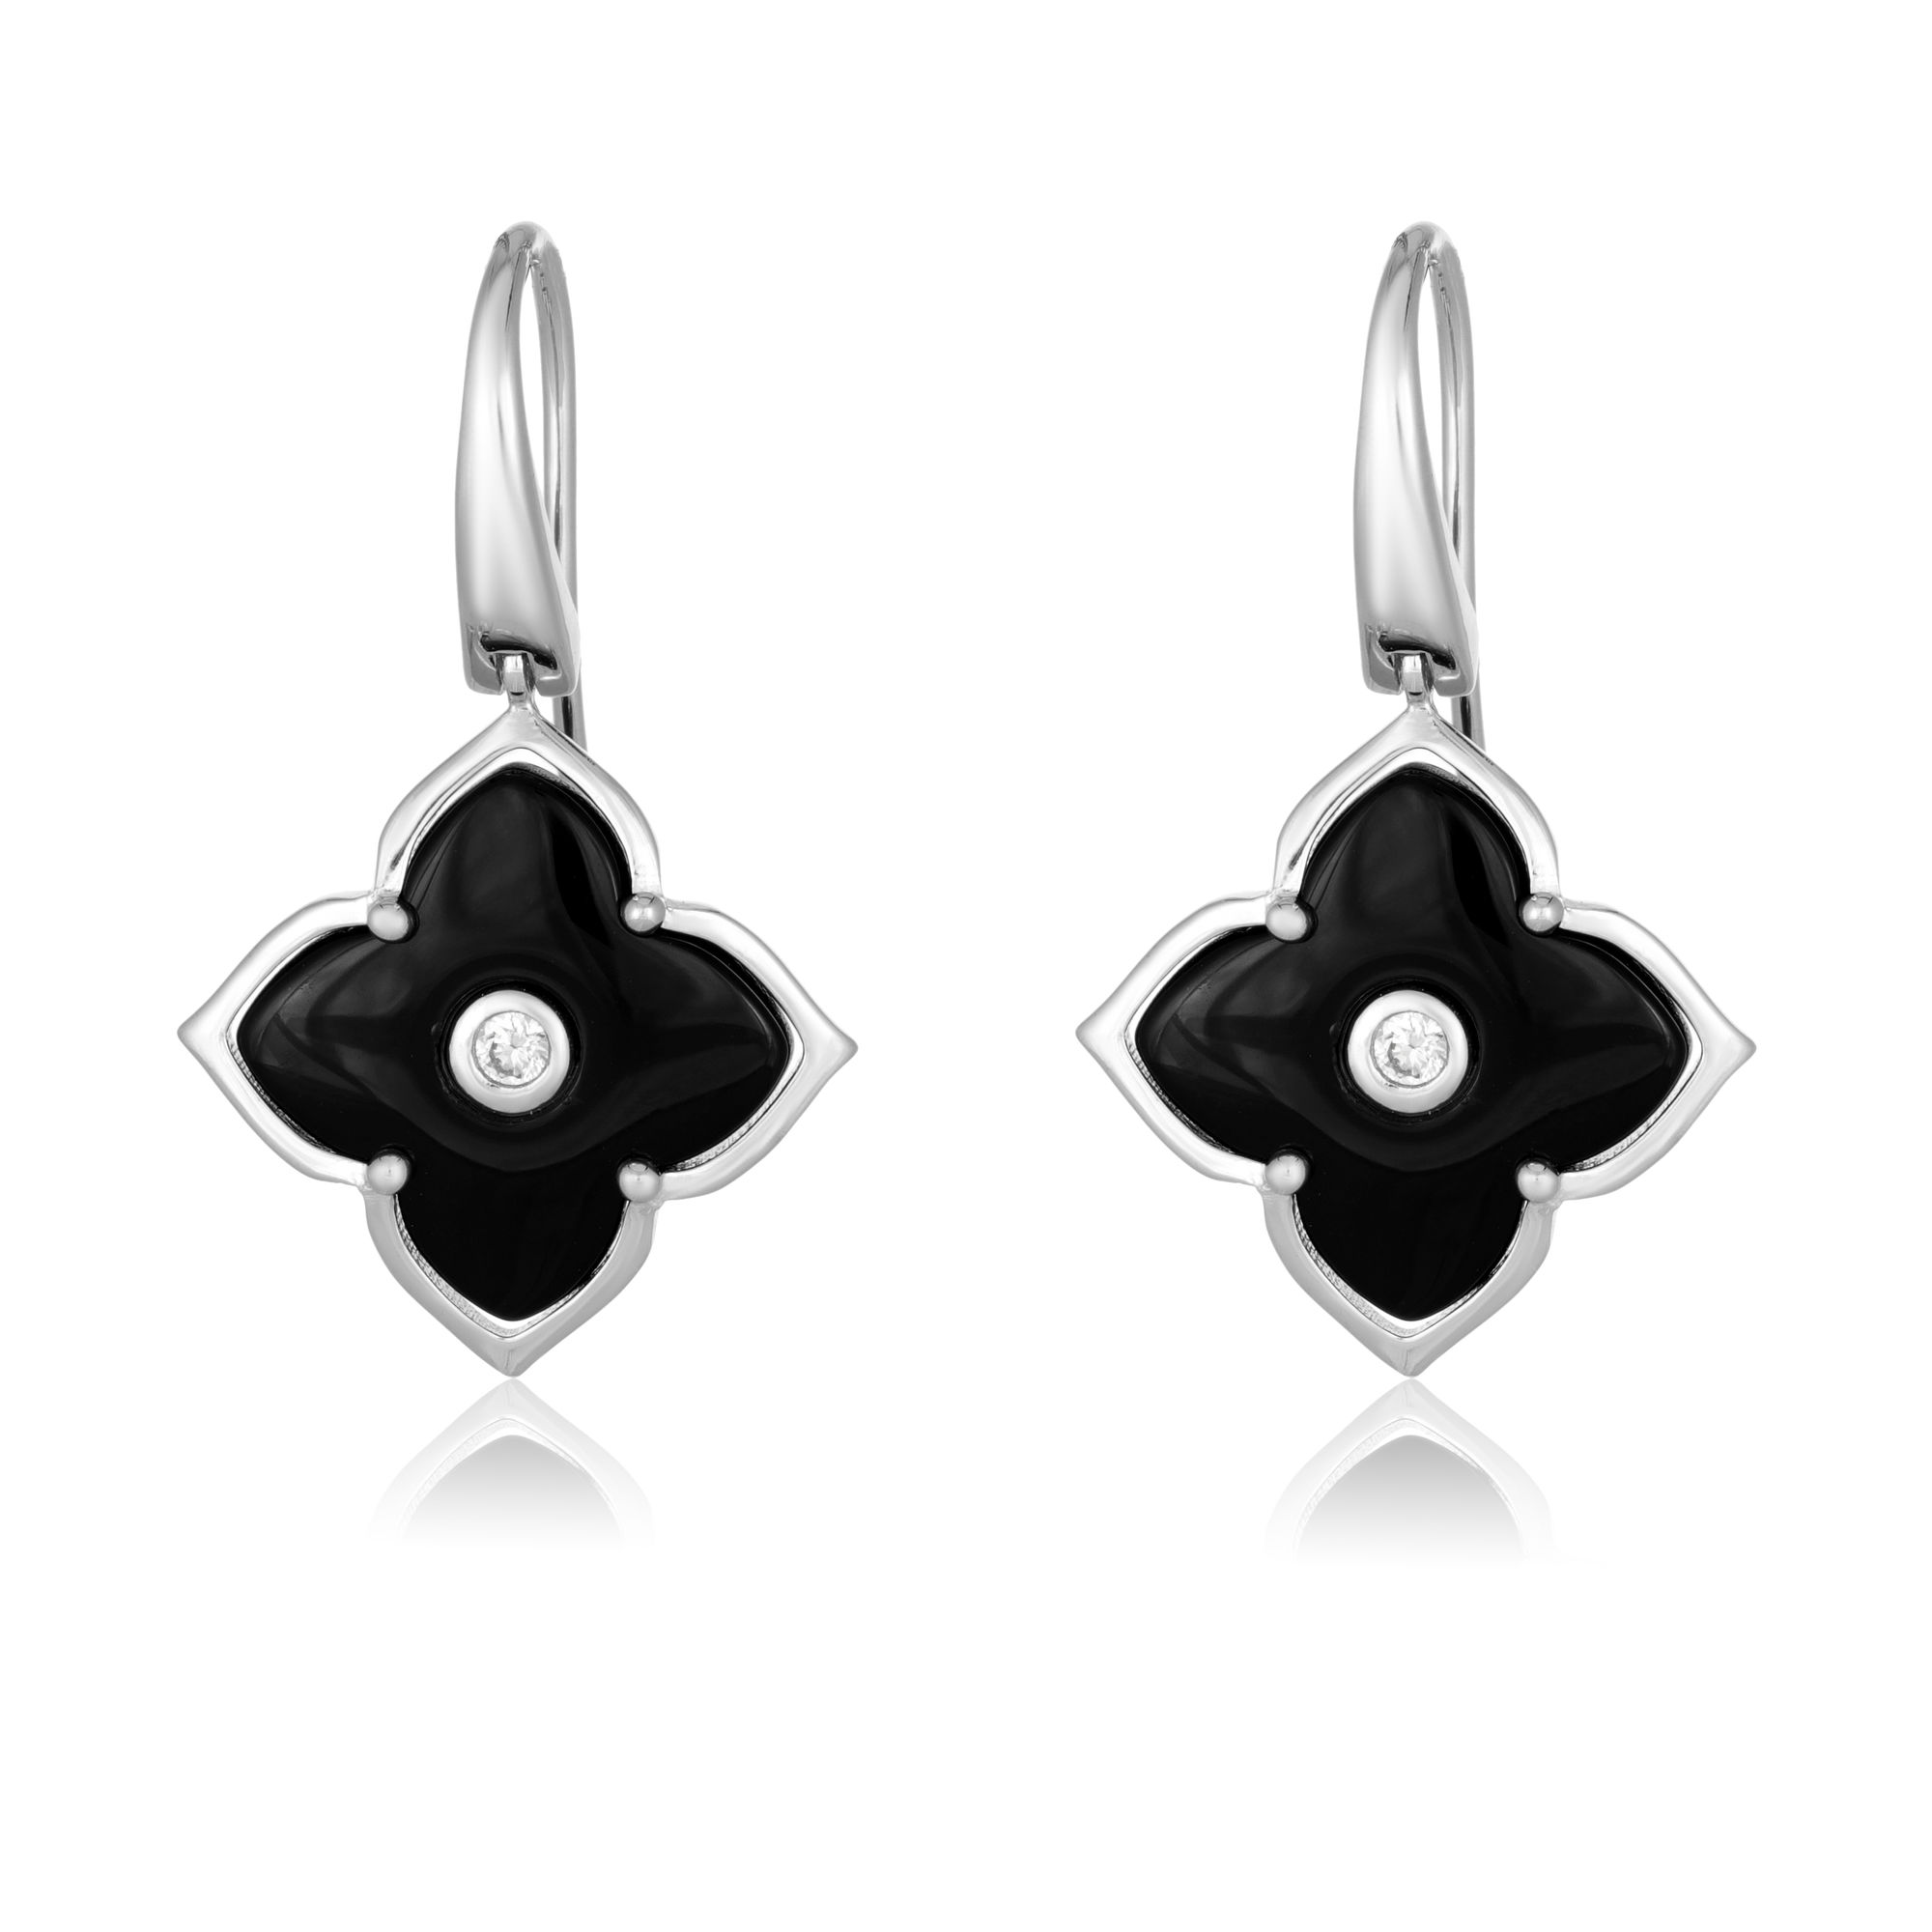 Lavari Jeweler Women's Black Onyx Flower Drop Dangle Earrings with Fish Hooks, 925 Sterling Silver, 16 MM